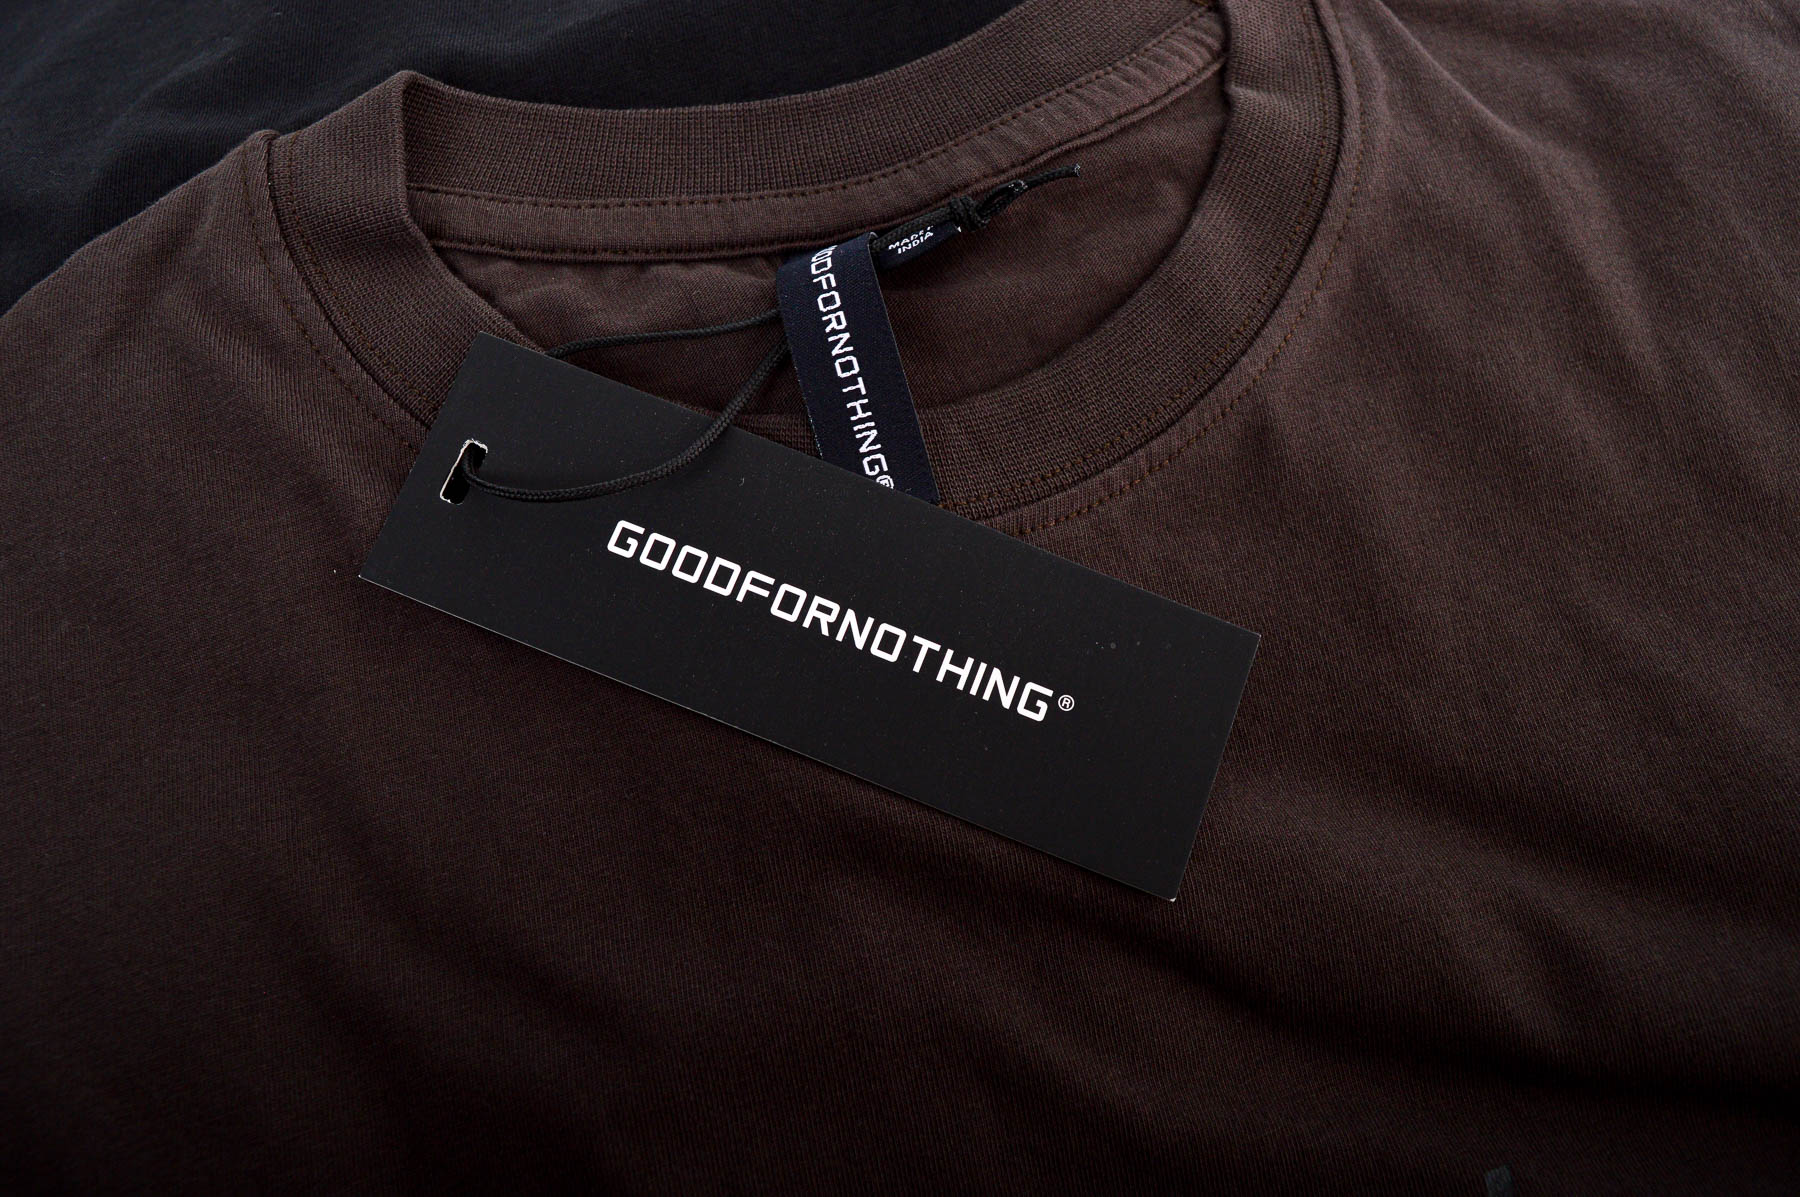 Ανδρικό μπλουζάκι - GOODFORNOTHING - 2